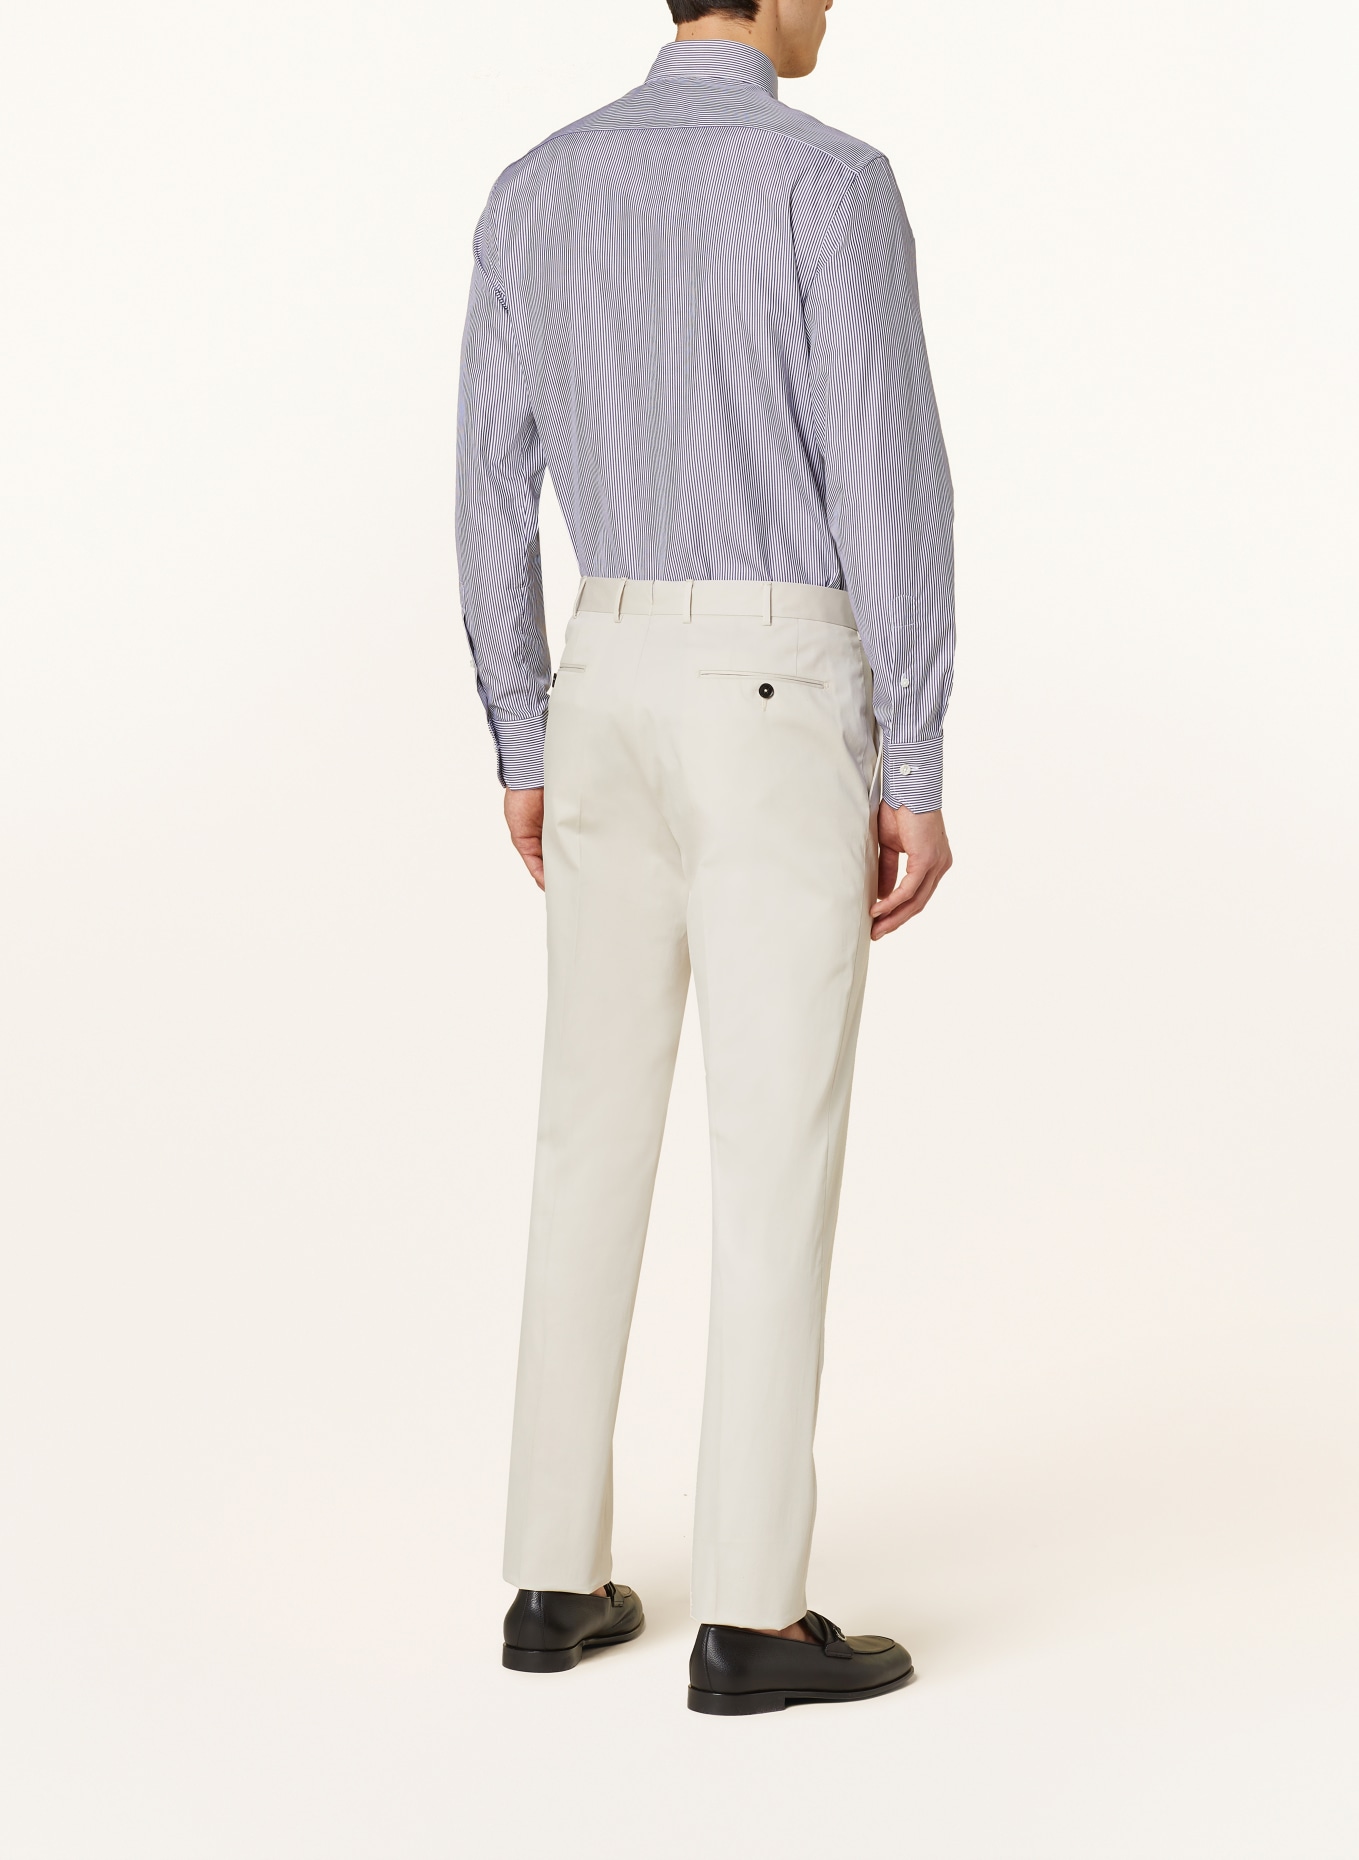 ZEGNA Shirt regular fit, Color: BLUE/ WHITE (Image 3)